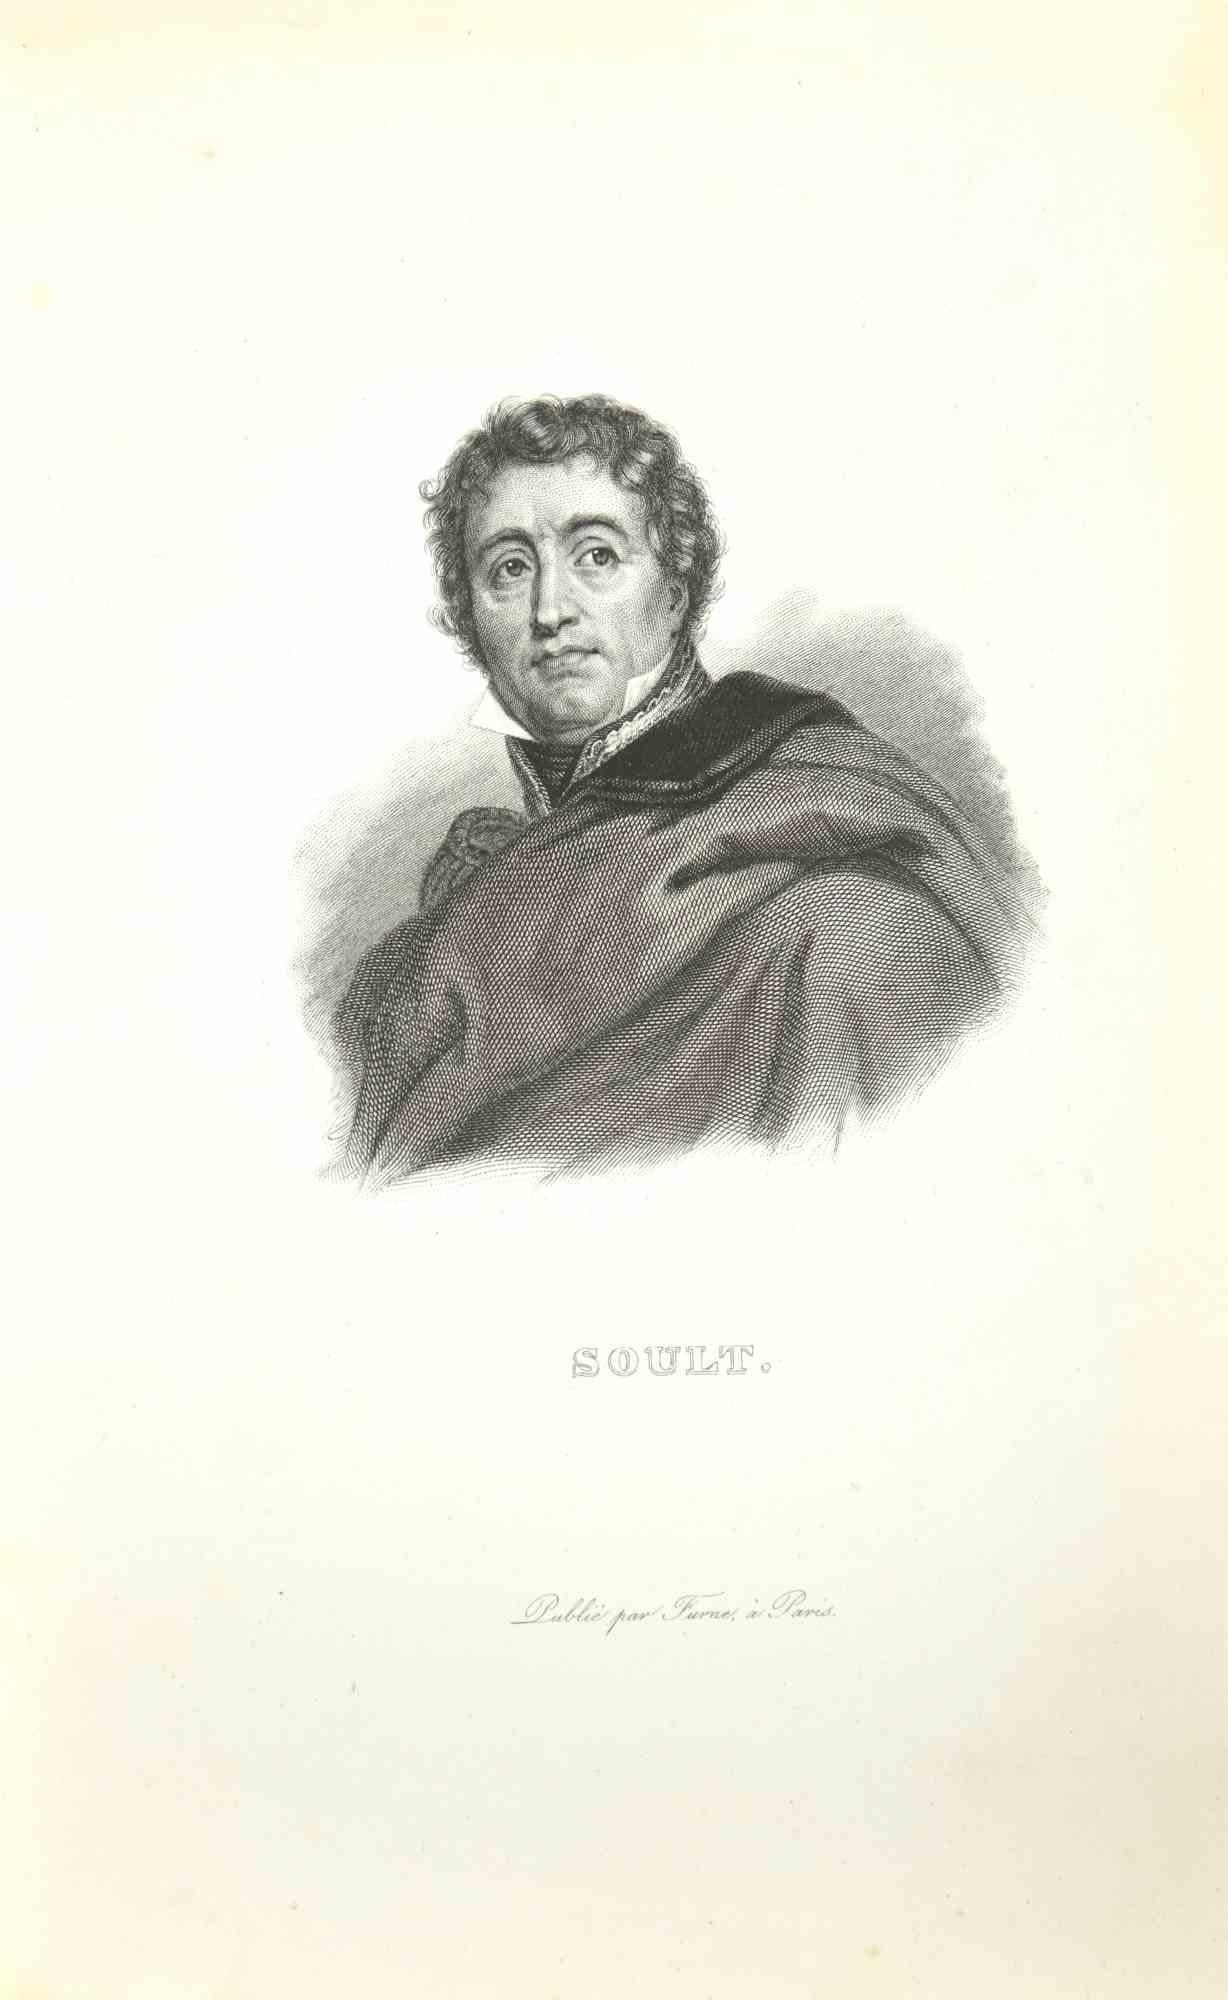 Pierre Francois Tardieu Figurative Print - Soult - Etching by Pierre François Tardieu - 1837